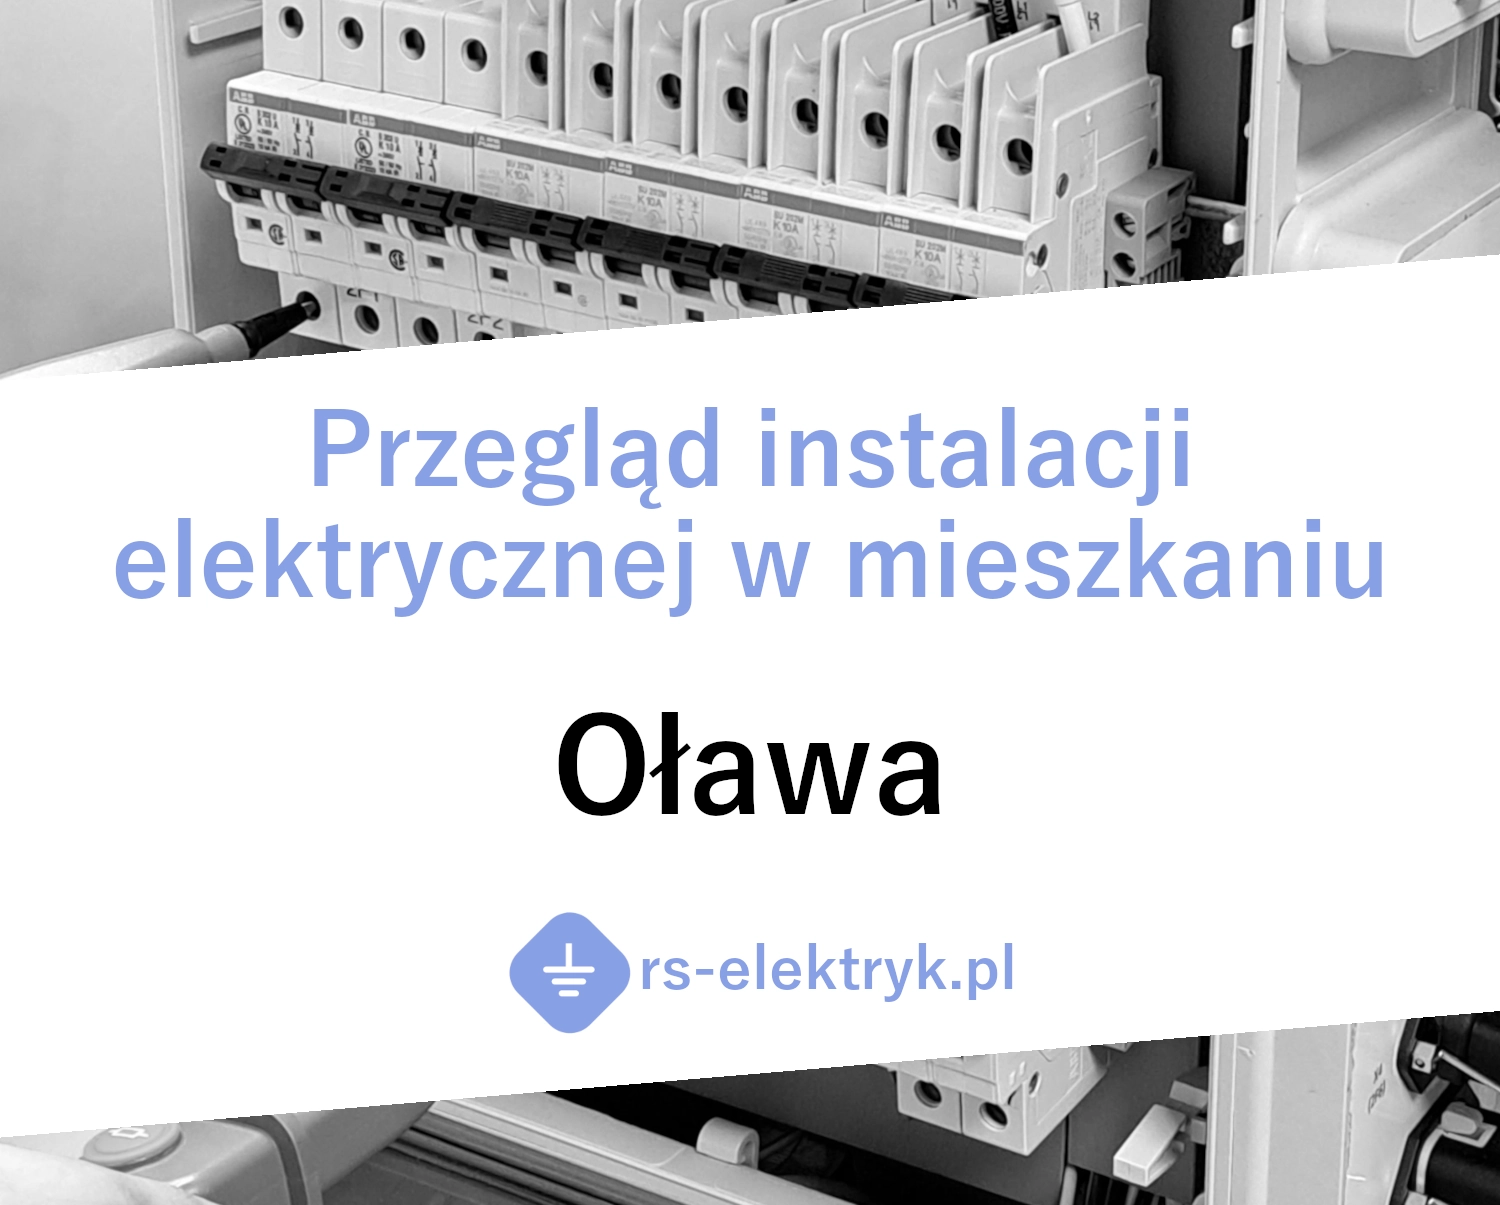 Przegląd instalacji elektrycznej w mieszkaniu Oława